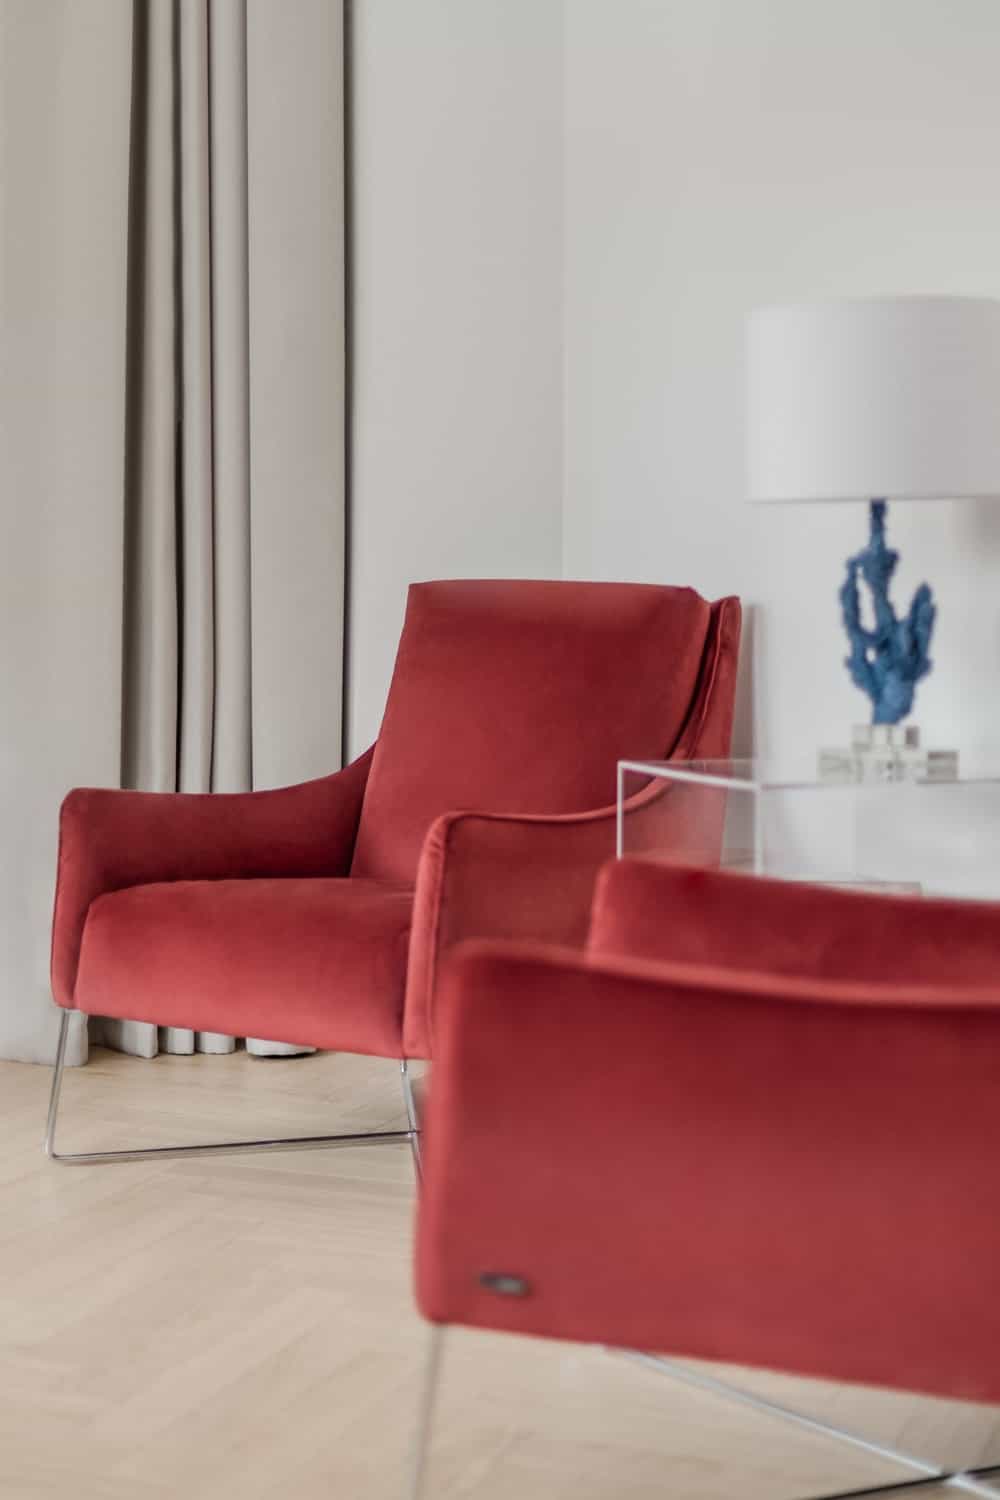 这两把软垫椅子有红色天鹅绒的美感，与墙壁和地板的浅色色调形成鲜明对比。